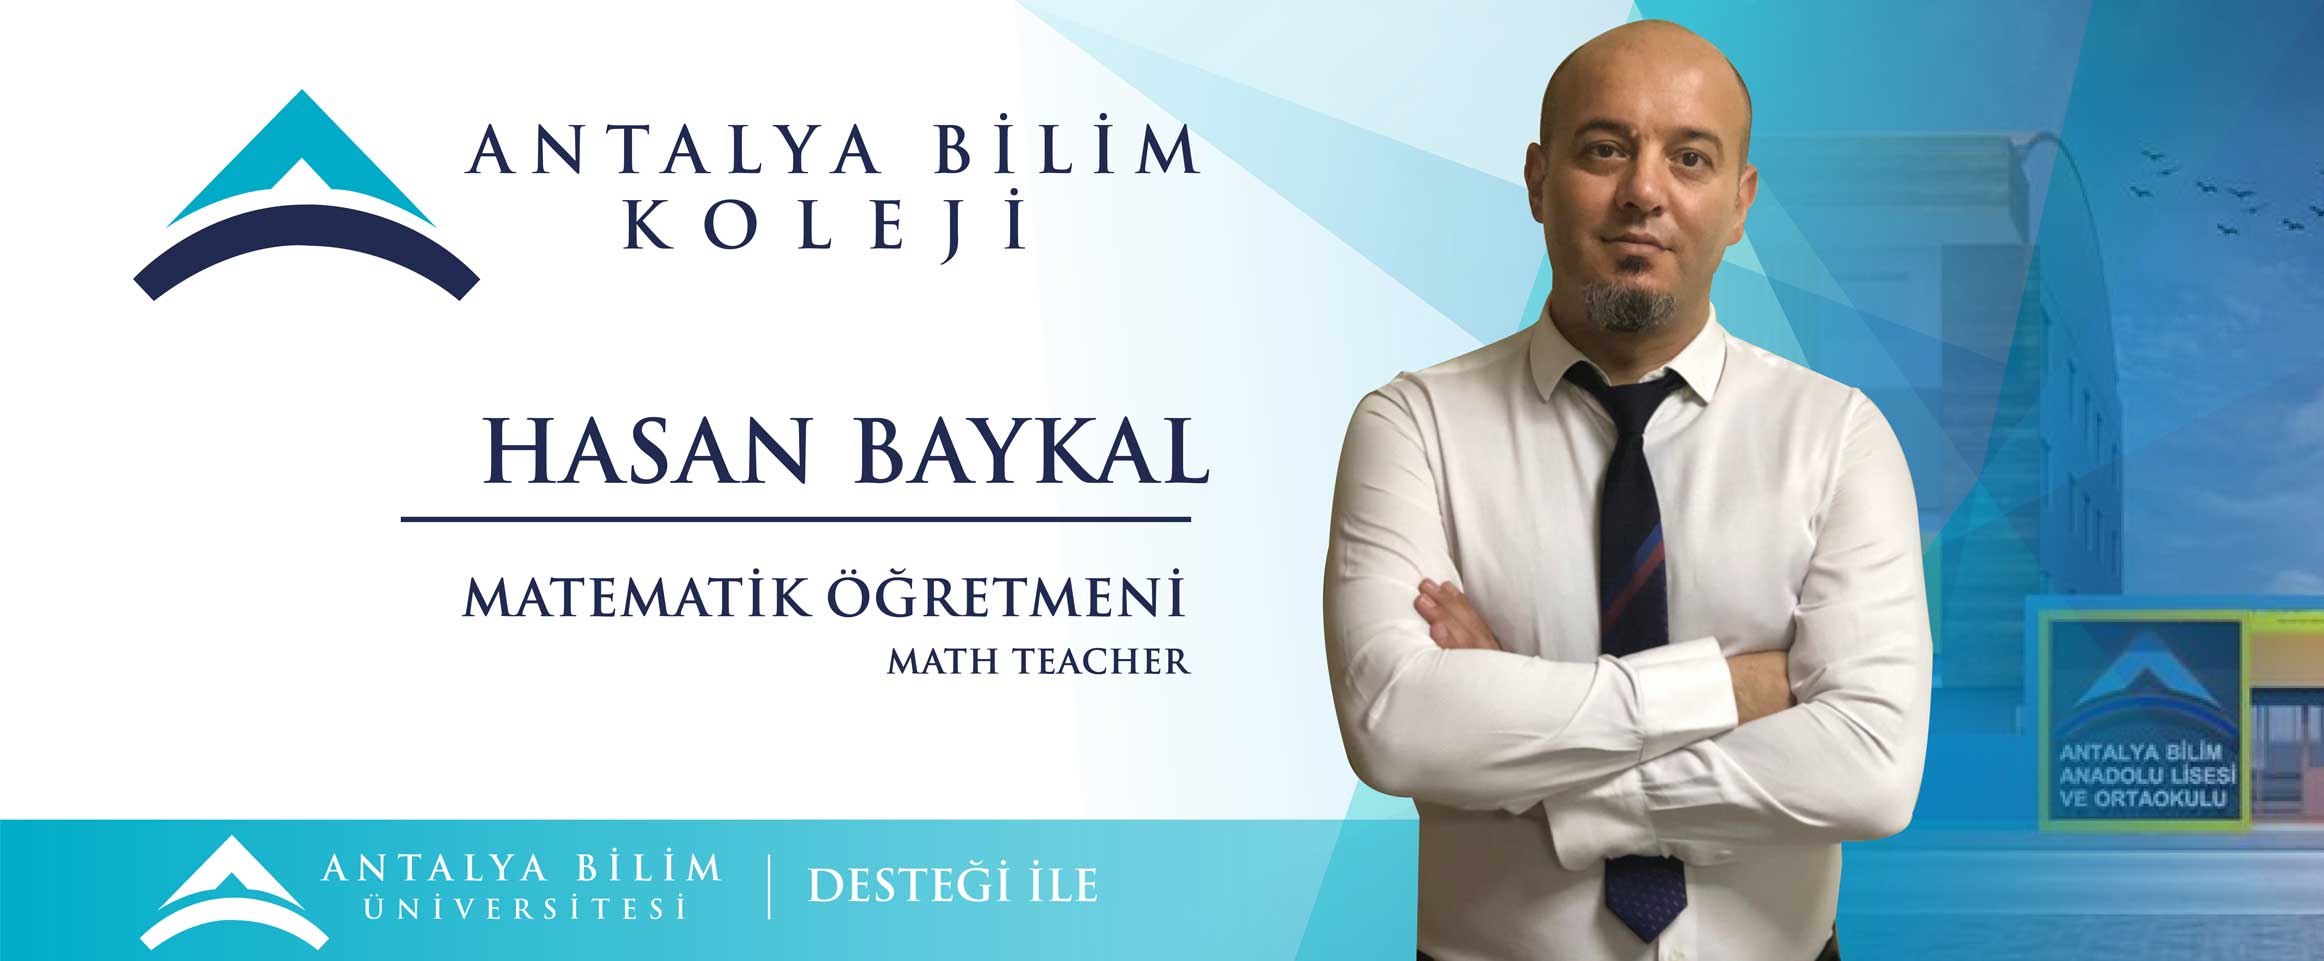 Hasan Baykal